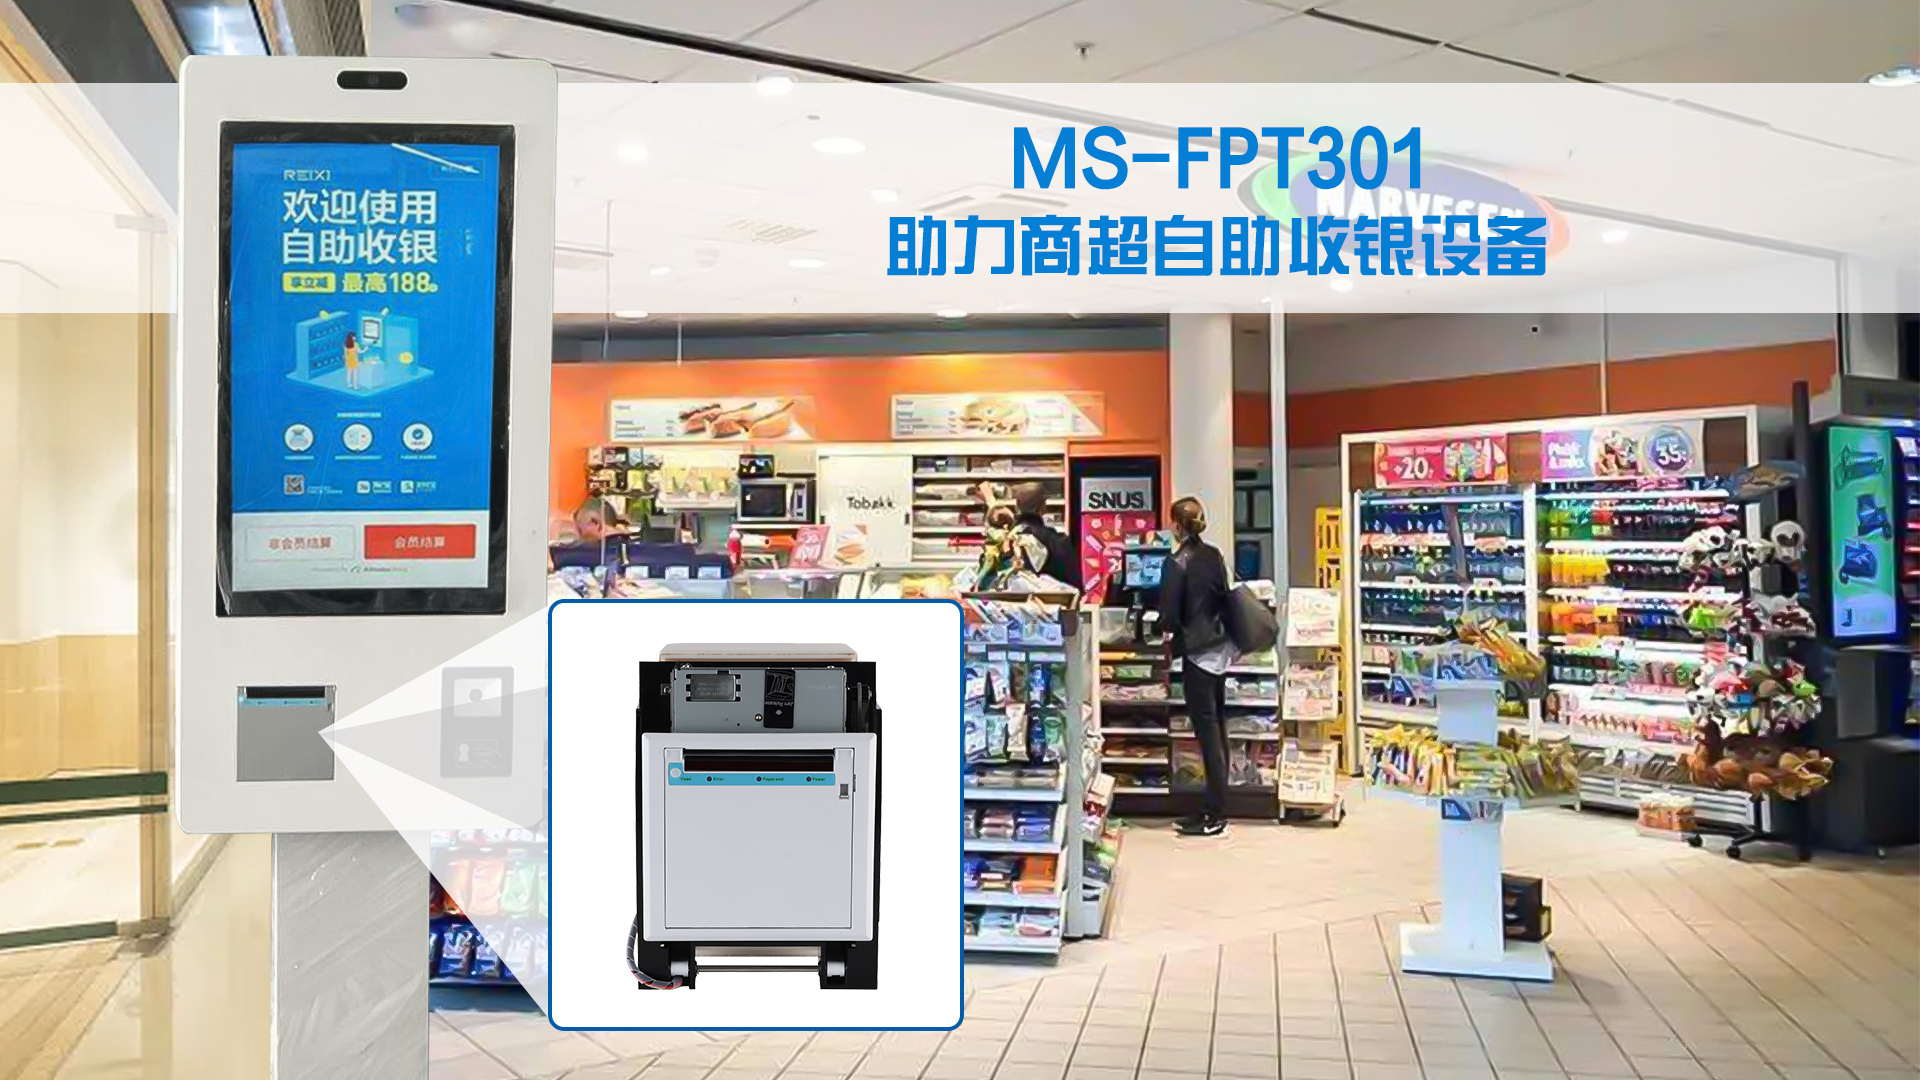 美松打印机MS-FPT301 为商超自助收银设备提供解决方案